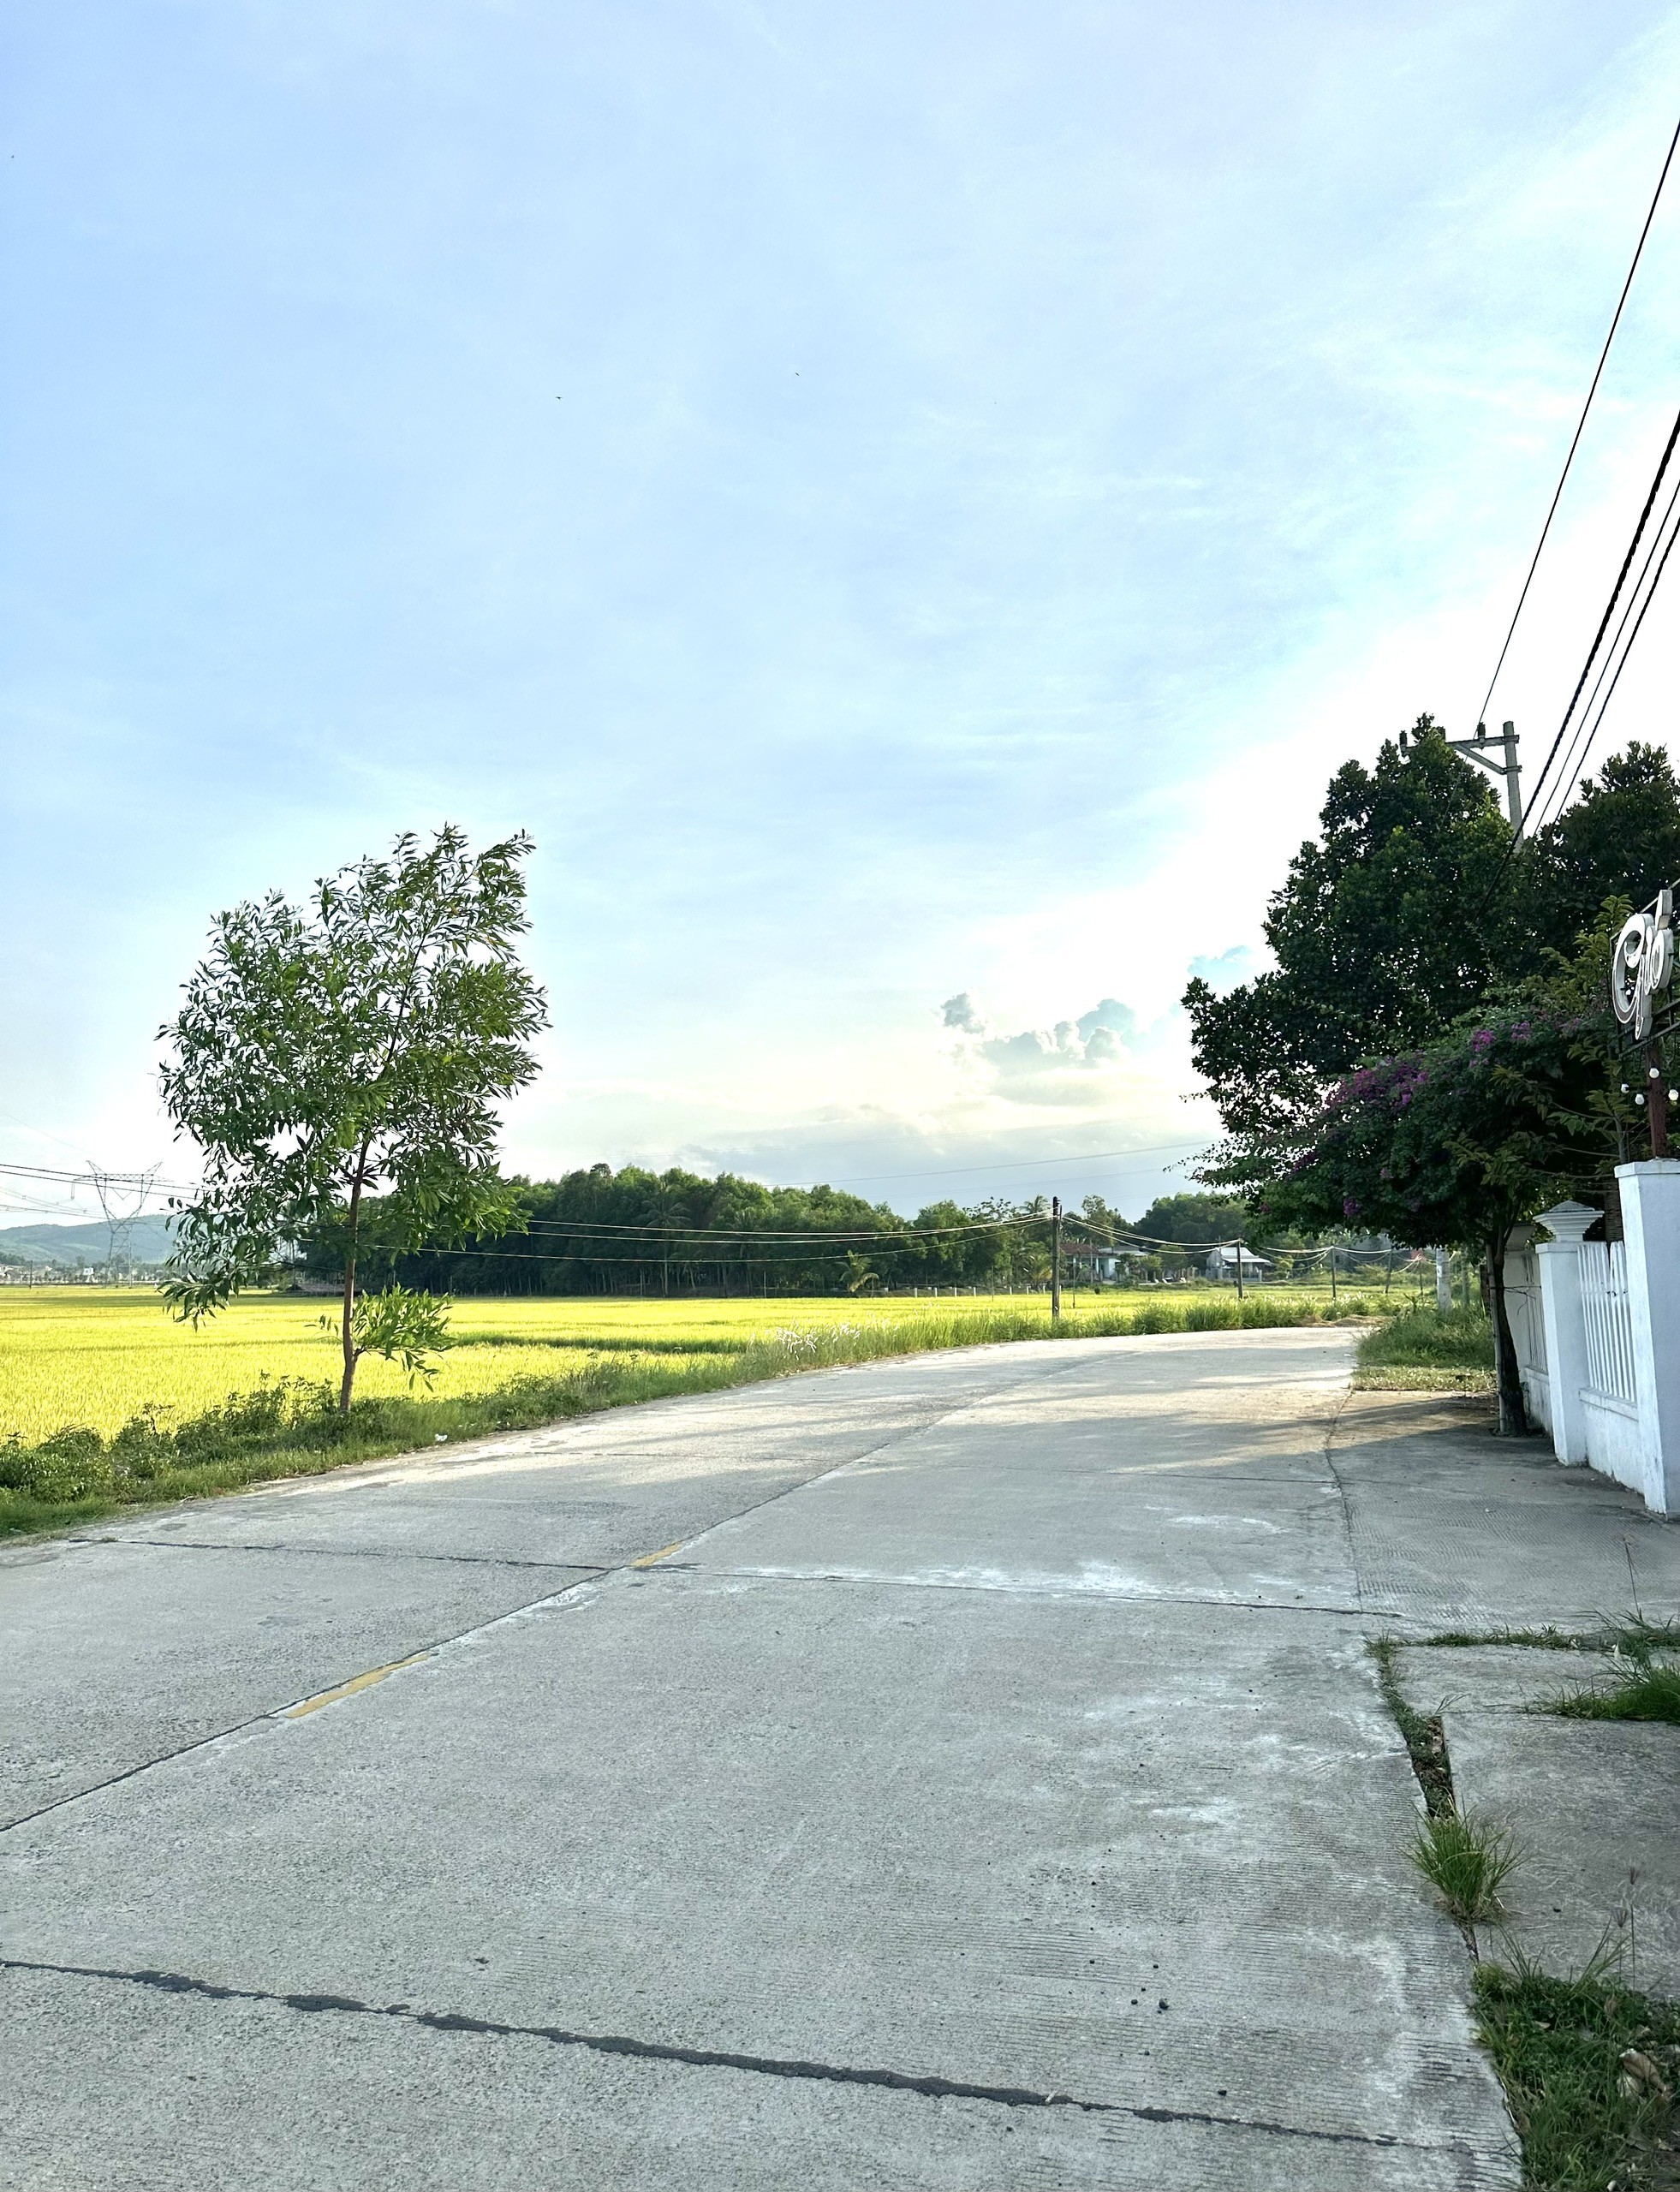 Cần bán lô đất ở Hòa Phong gần đường lộ, view cánh đồng thoáng mát 2